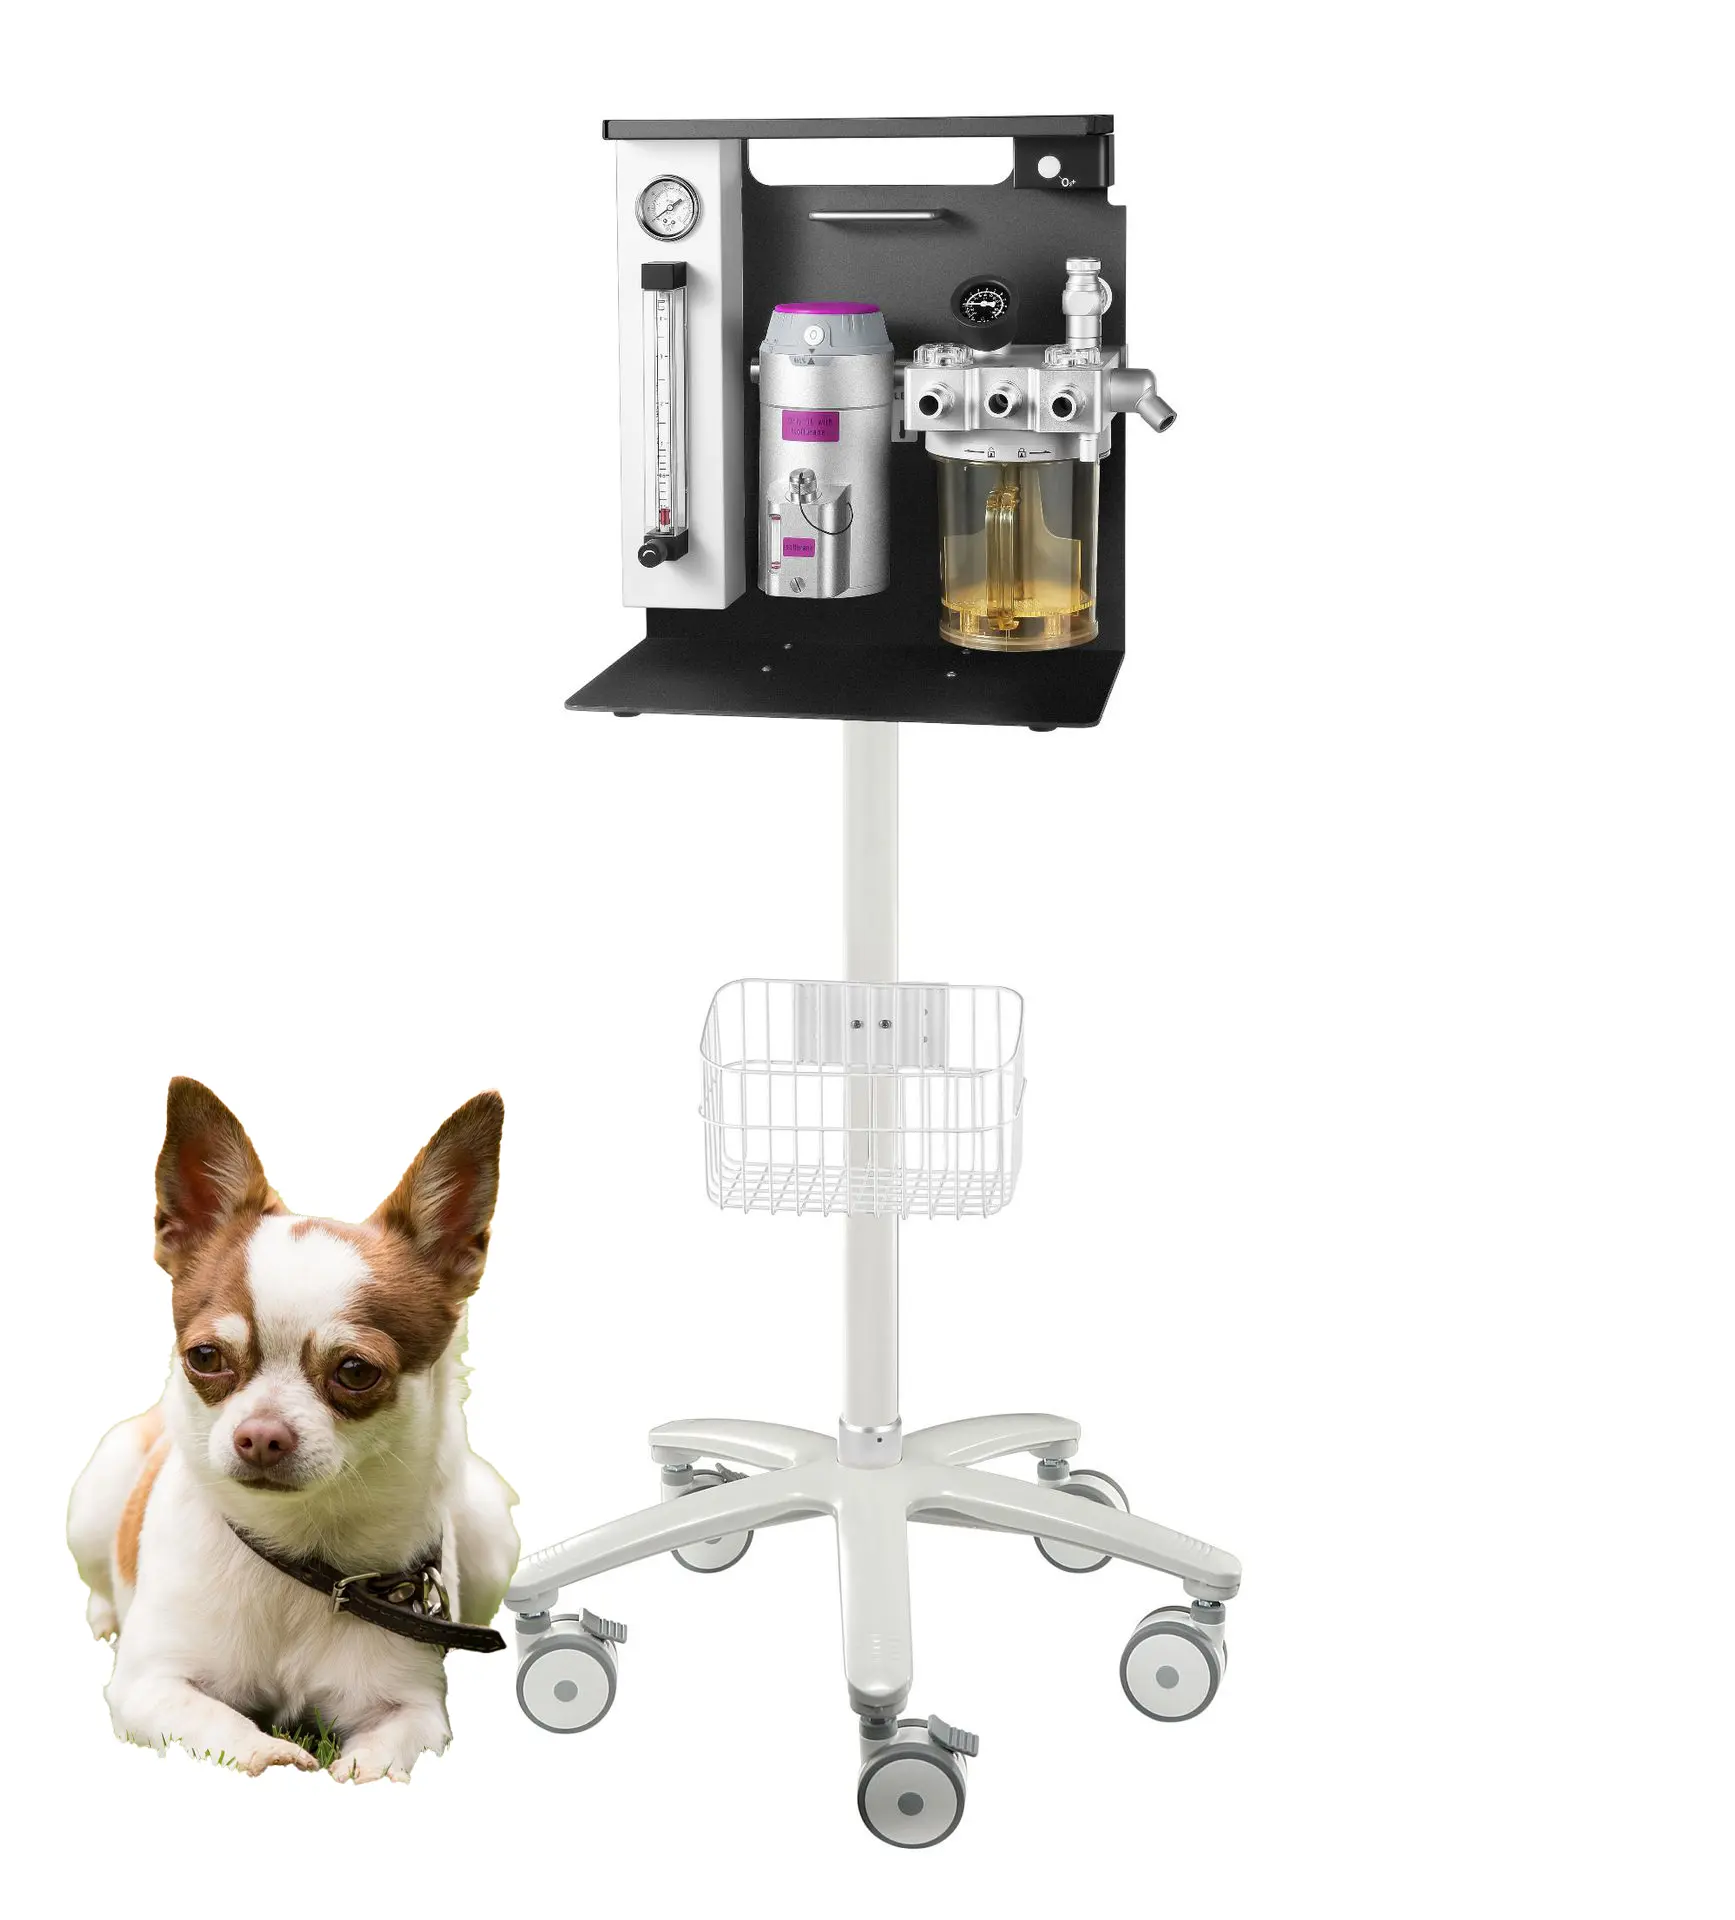 Хорошая продажа, медицинский портативный мобильный ингаляционный аппарат для ветеринарной анестезии с использованием животных